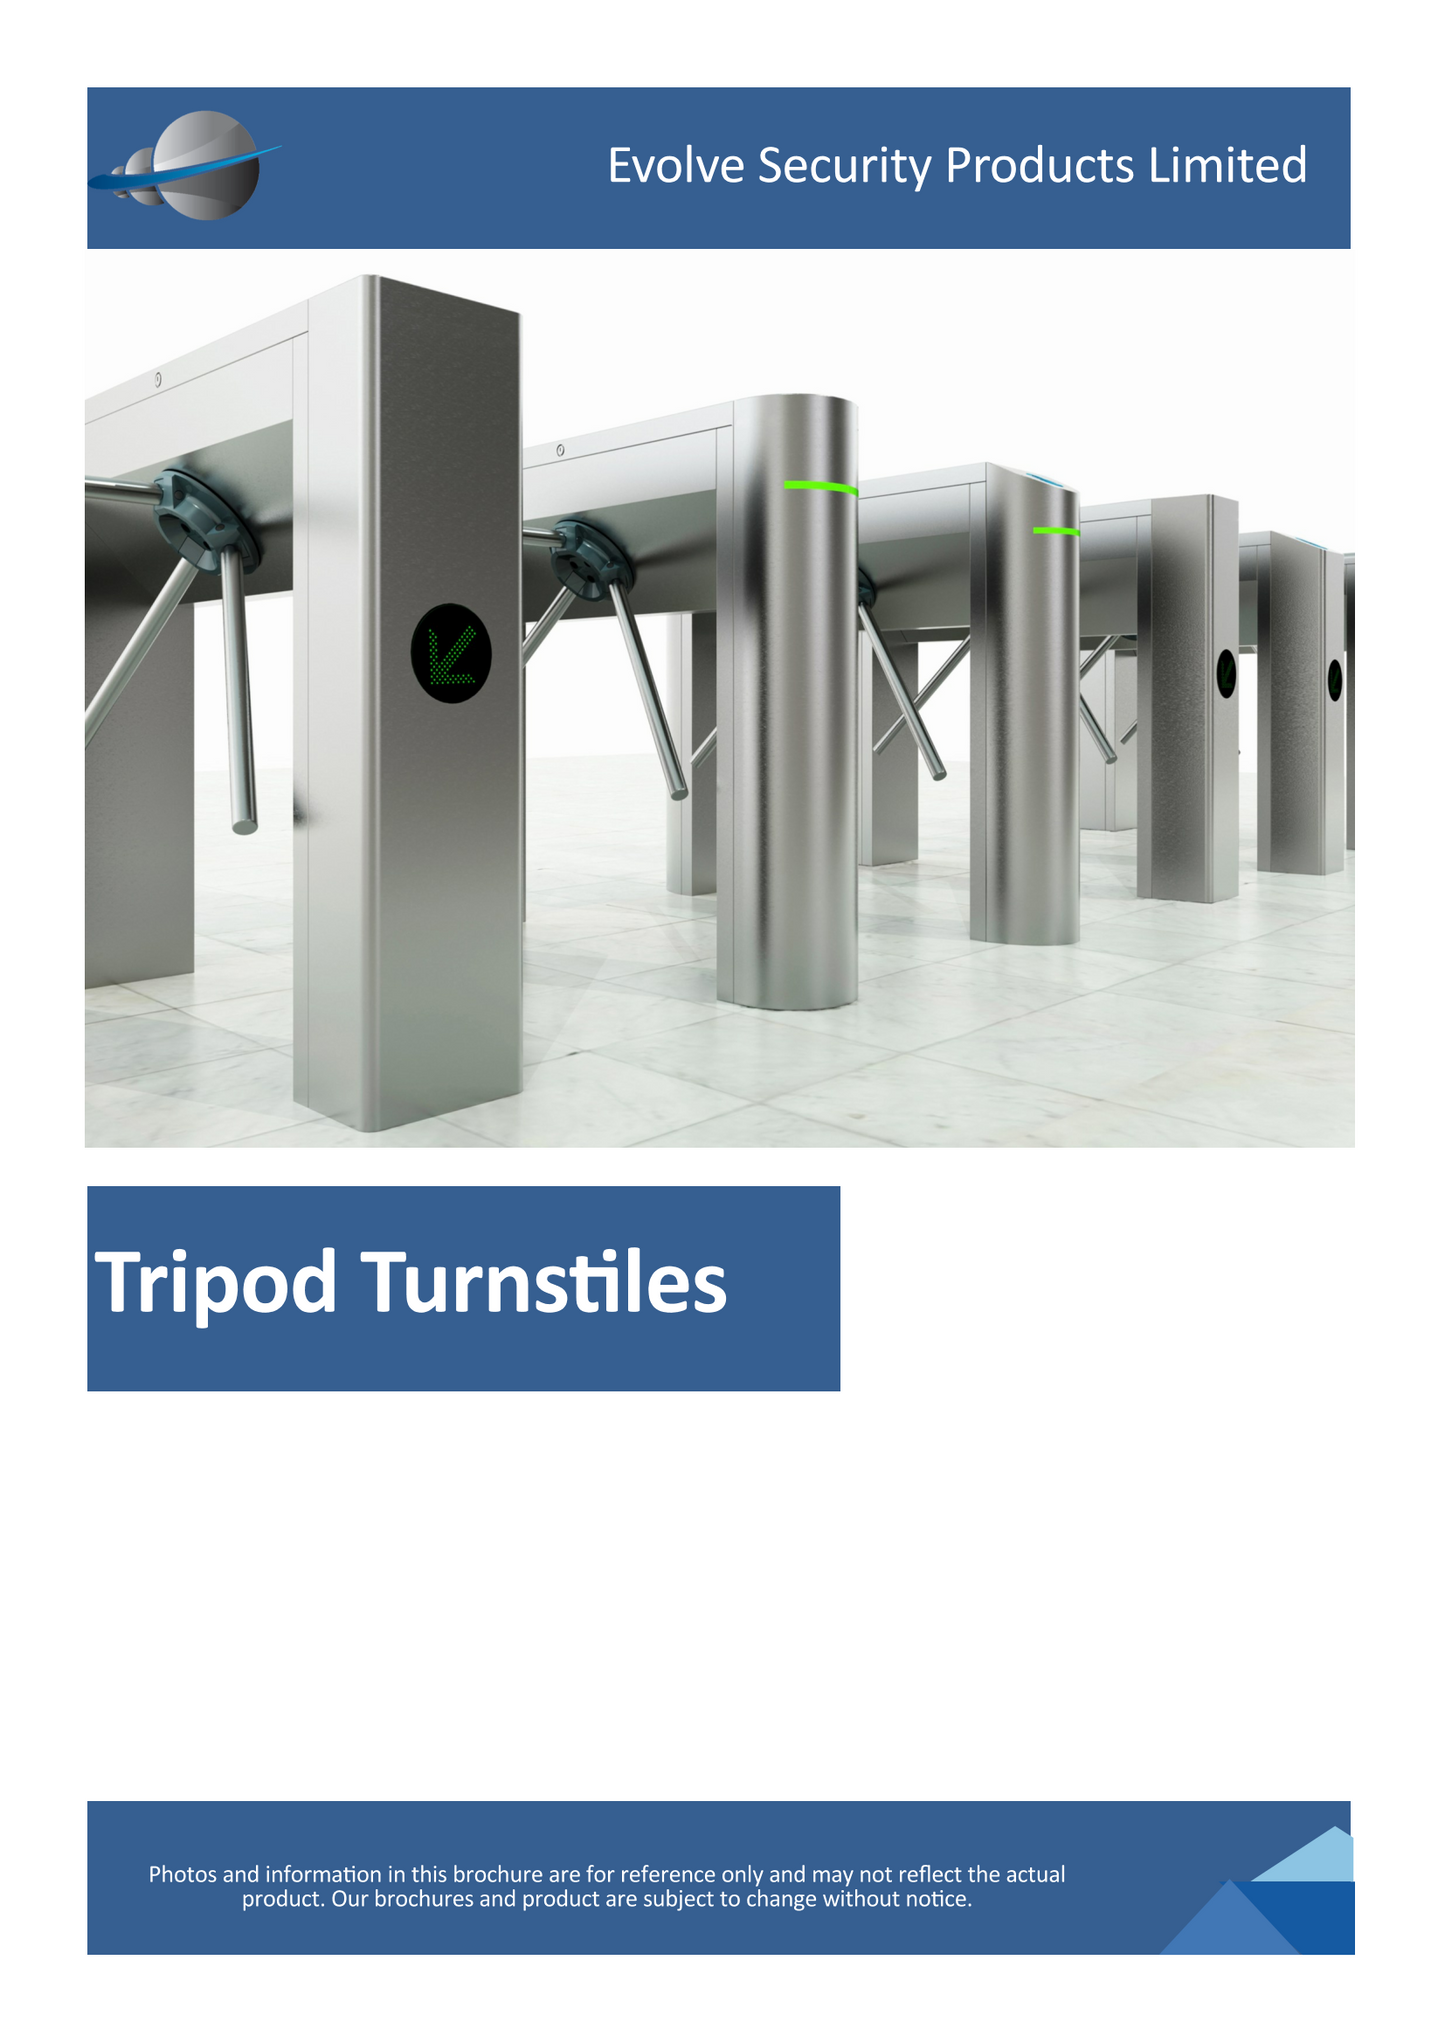 Evolve TT300 Tripod Turnstile